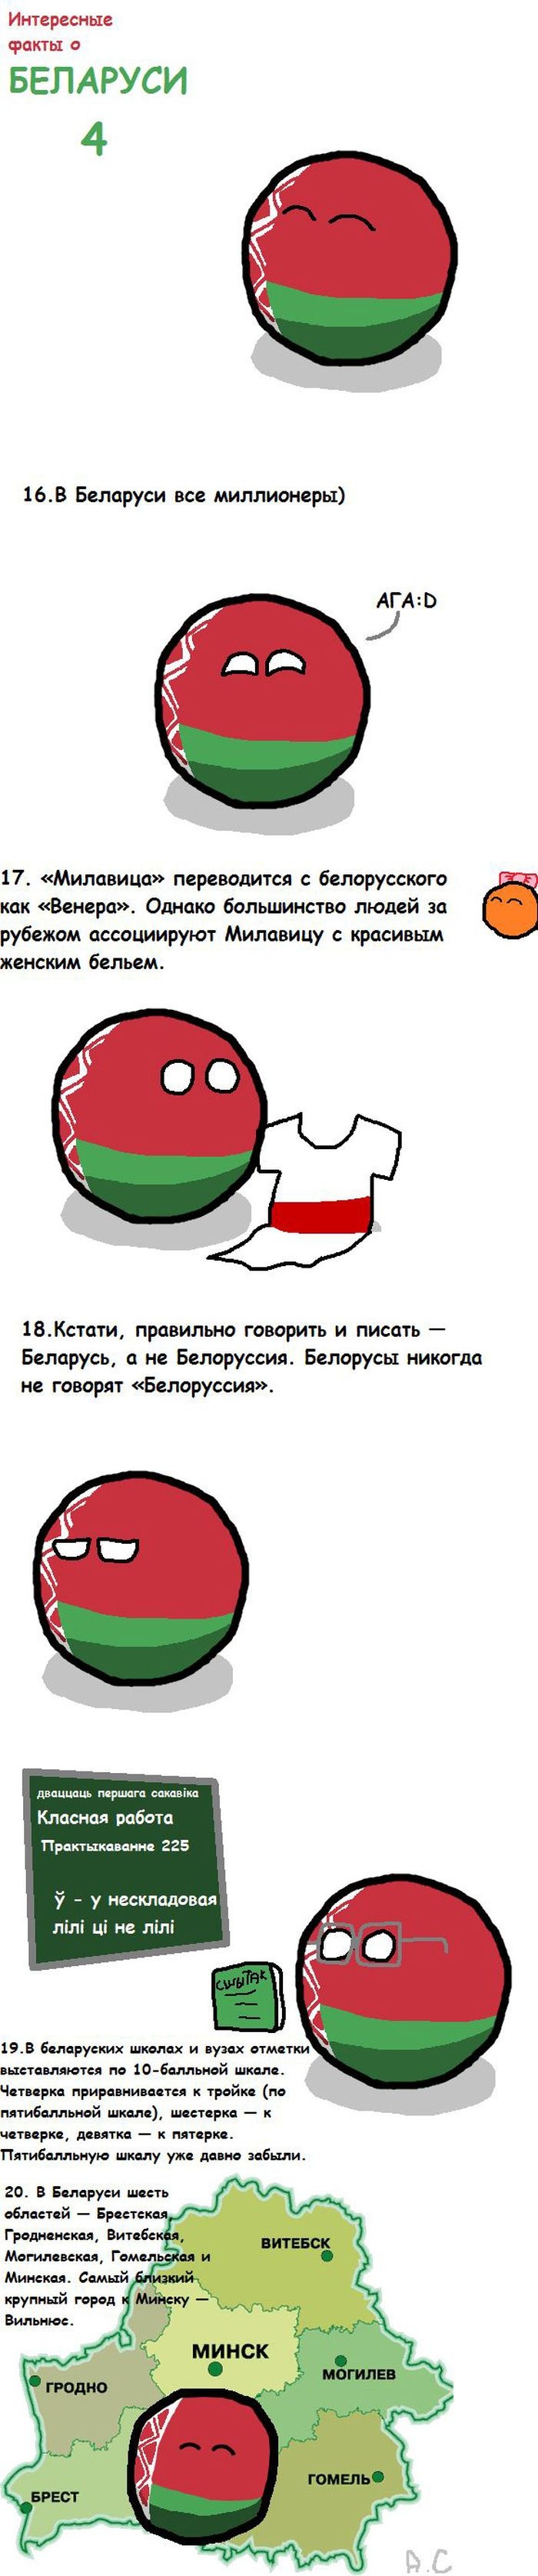 40 интересных фактов о Белоруссии